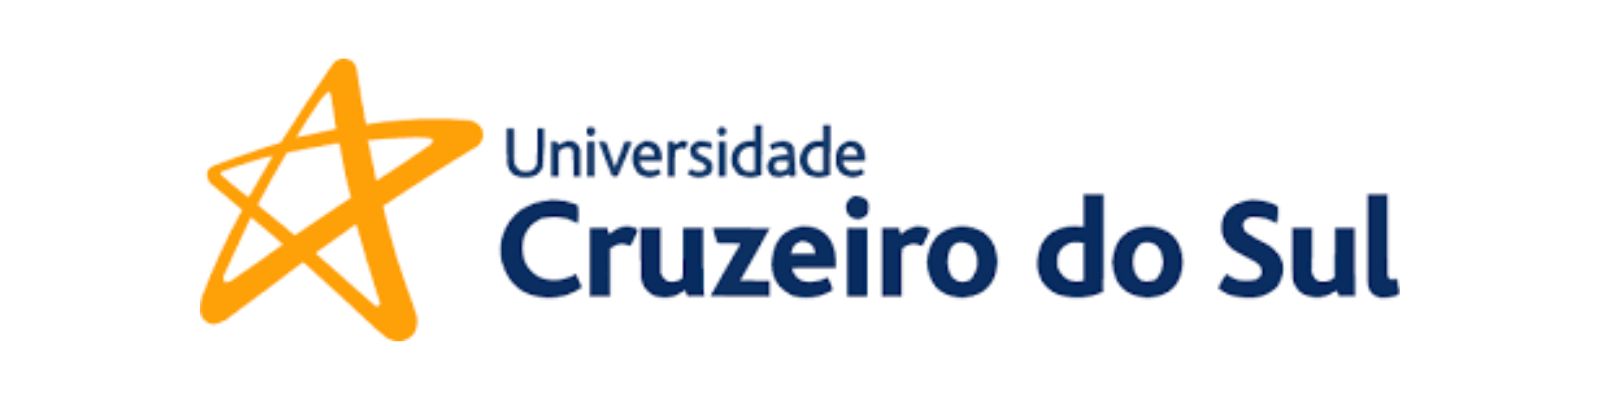 WhatsApp Cruzeiro do Sul: Saiba como entrar em contato!